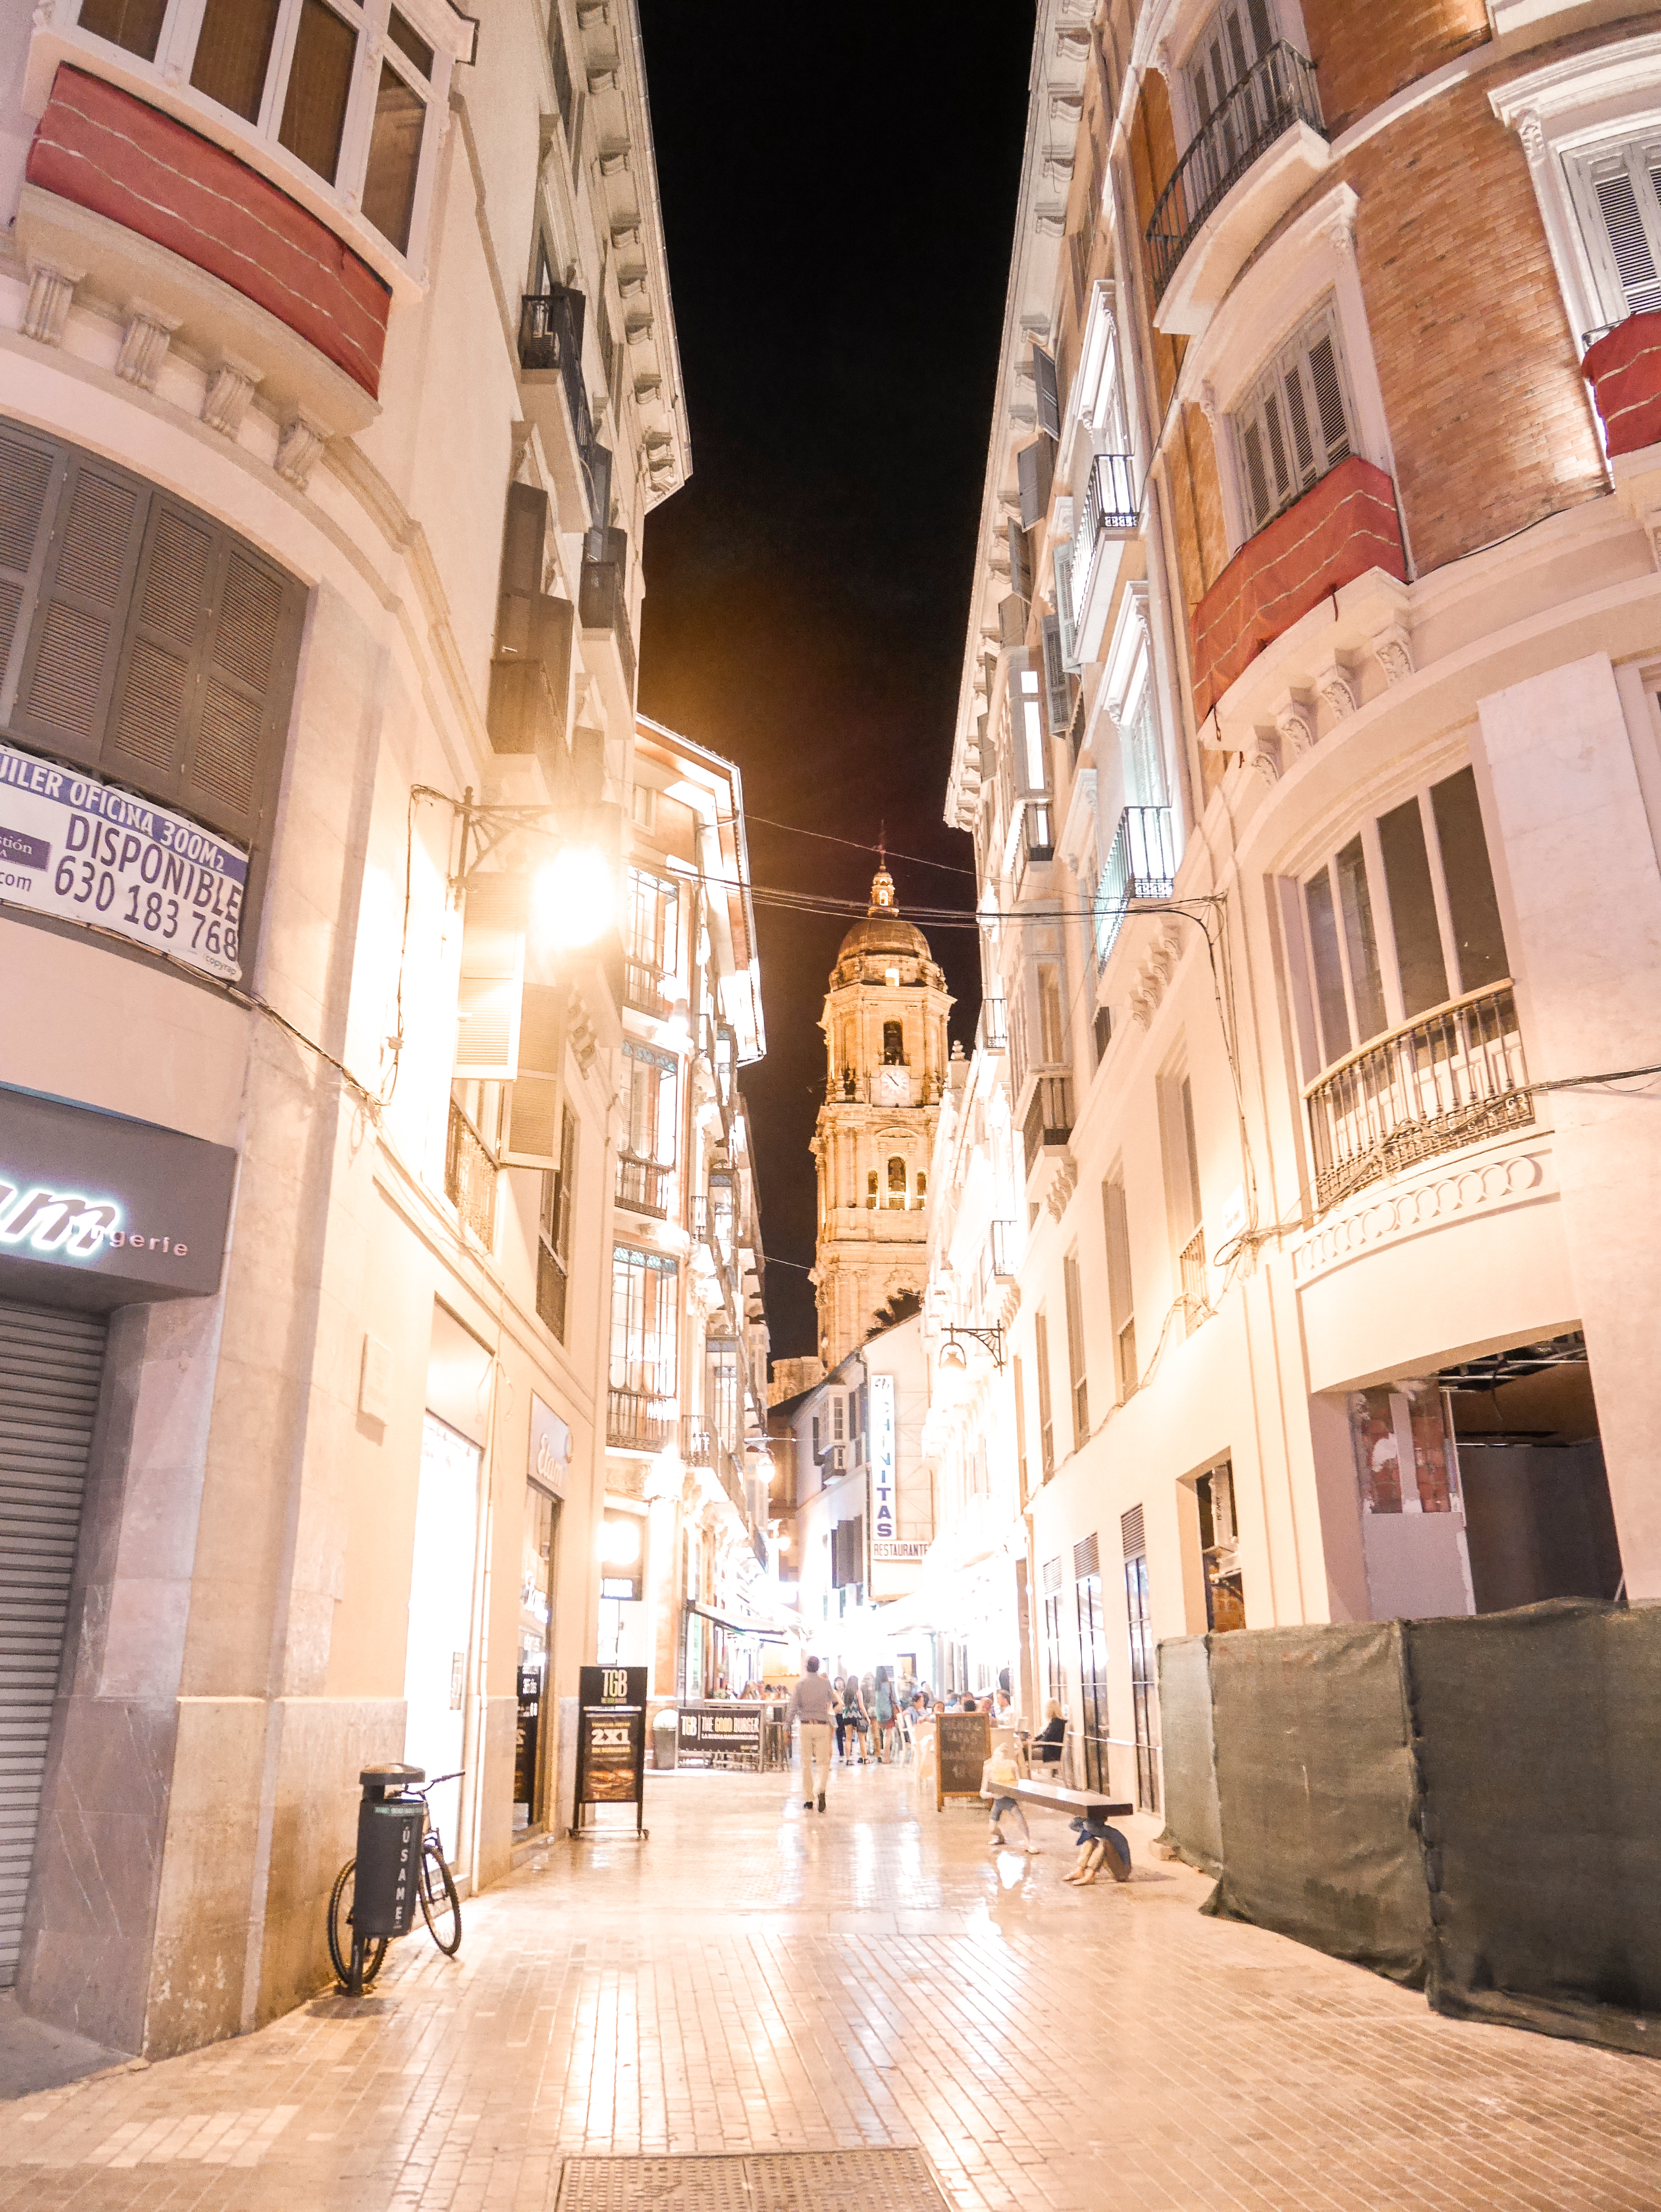 Calle Marques de Larios at night